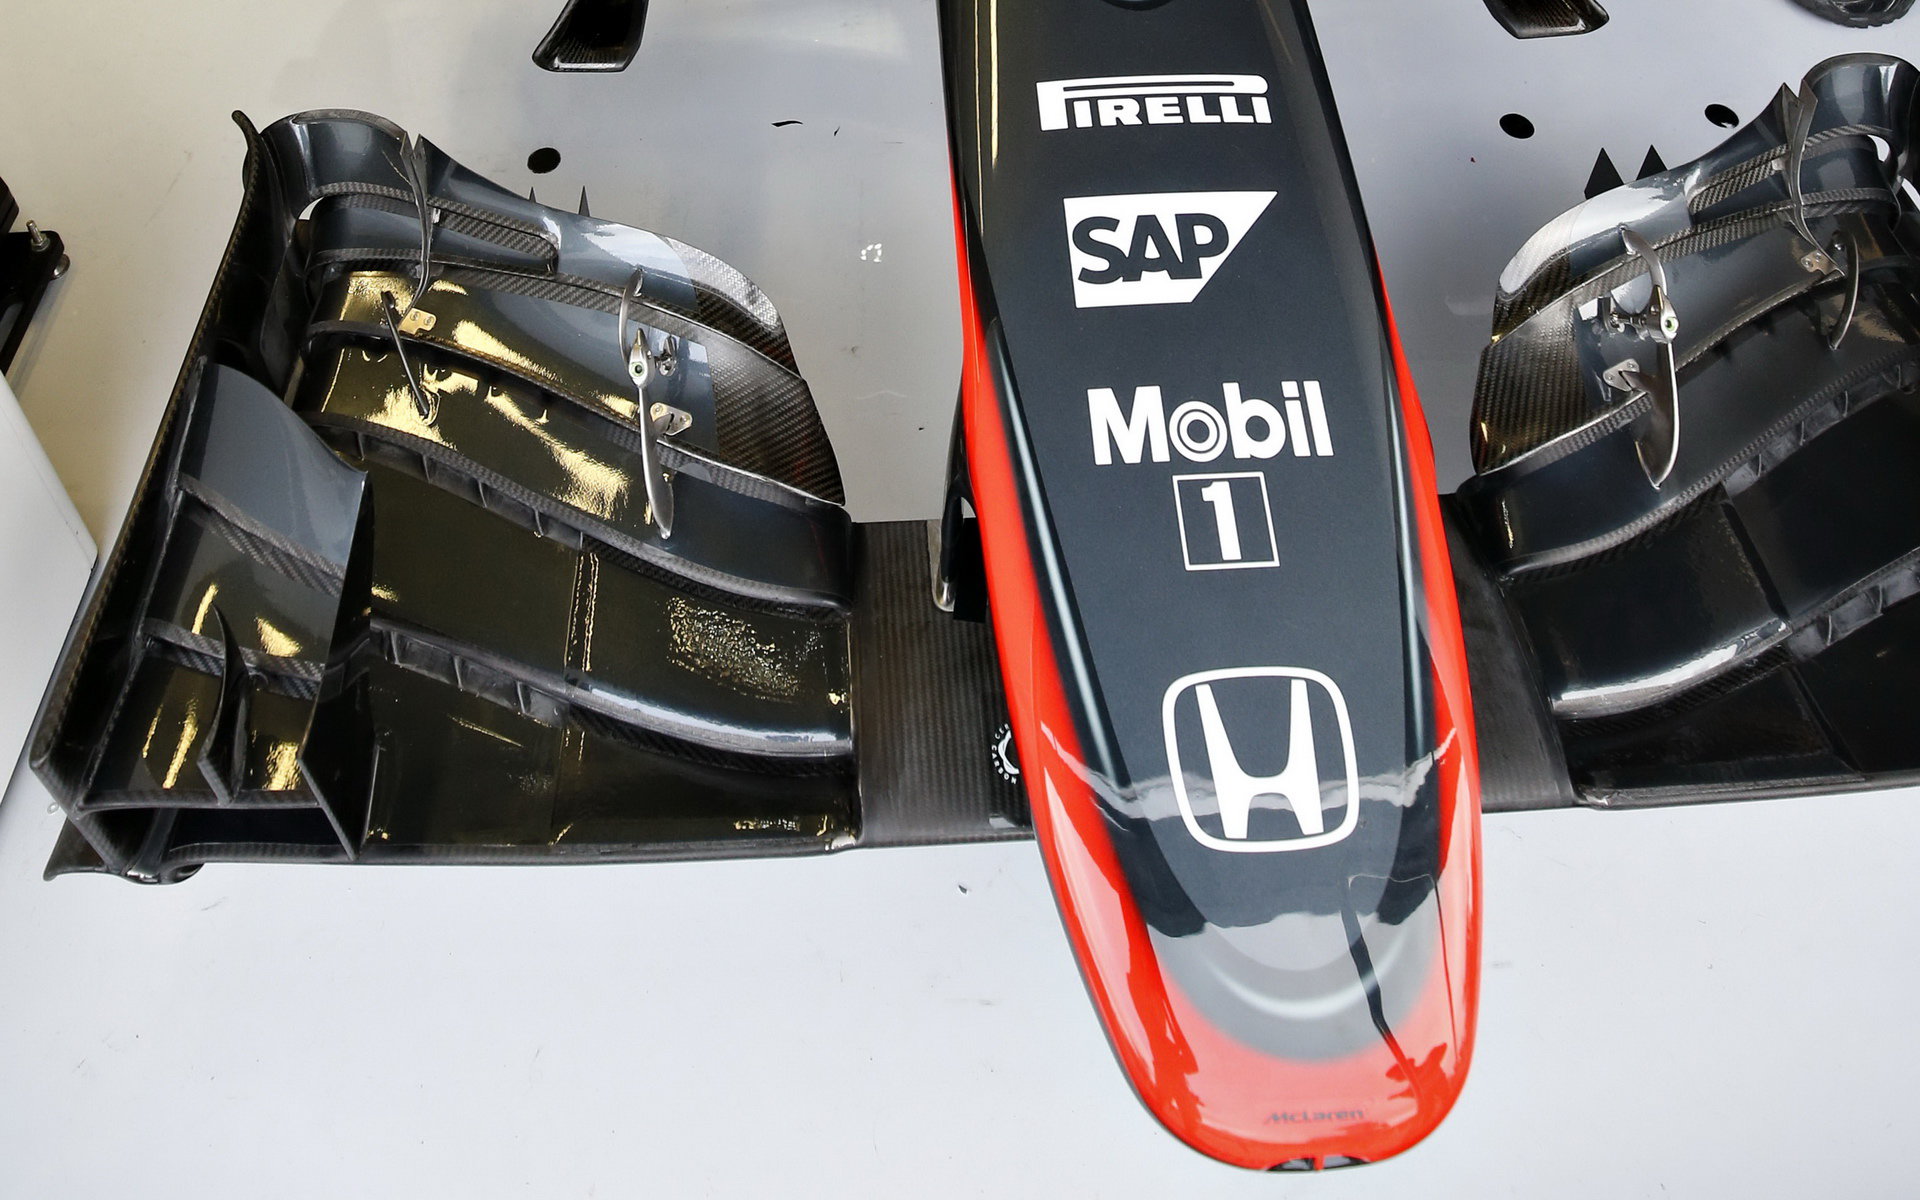 Detail předního křídla vozu McLaren MP4-30 Honda, GP Itálie (Monza)